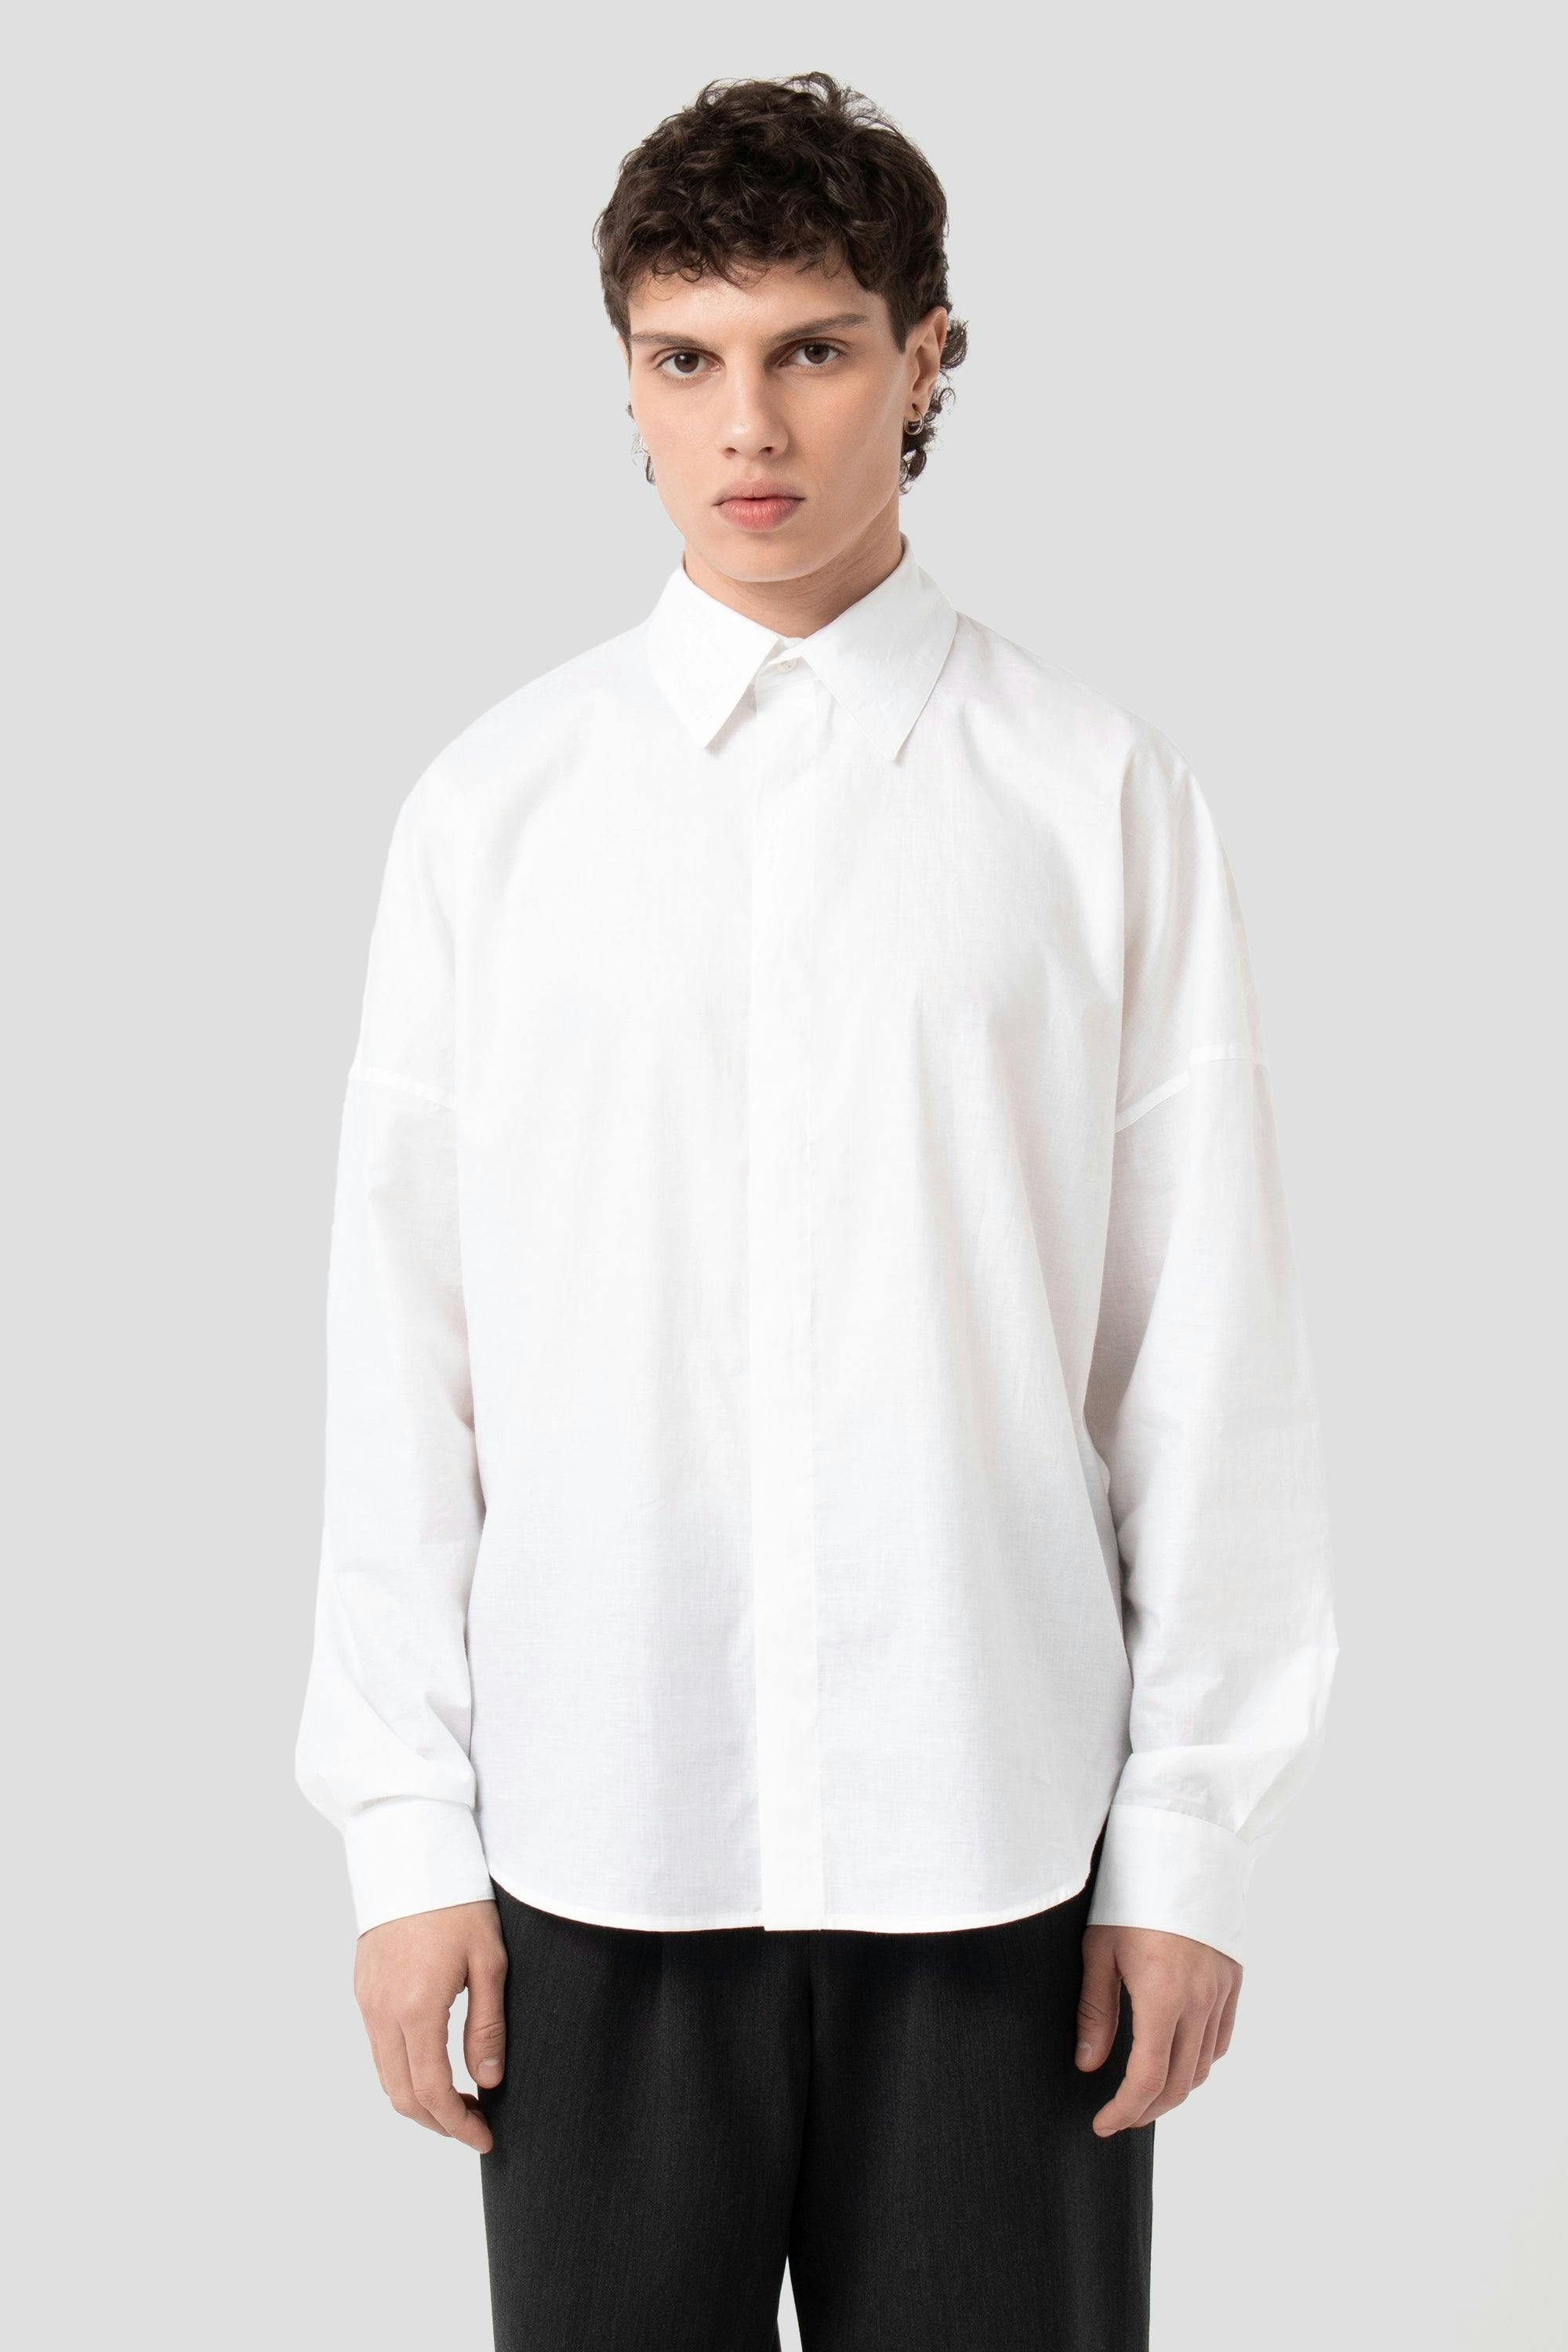 JNORIG White Long-Sleeved dress Shirt